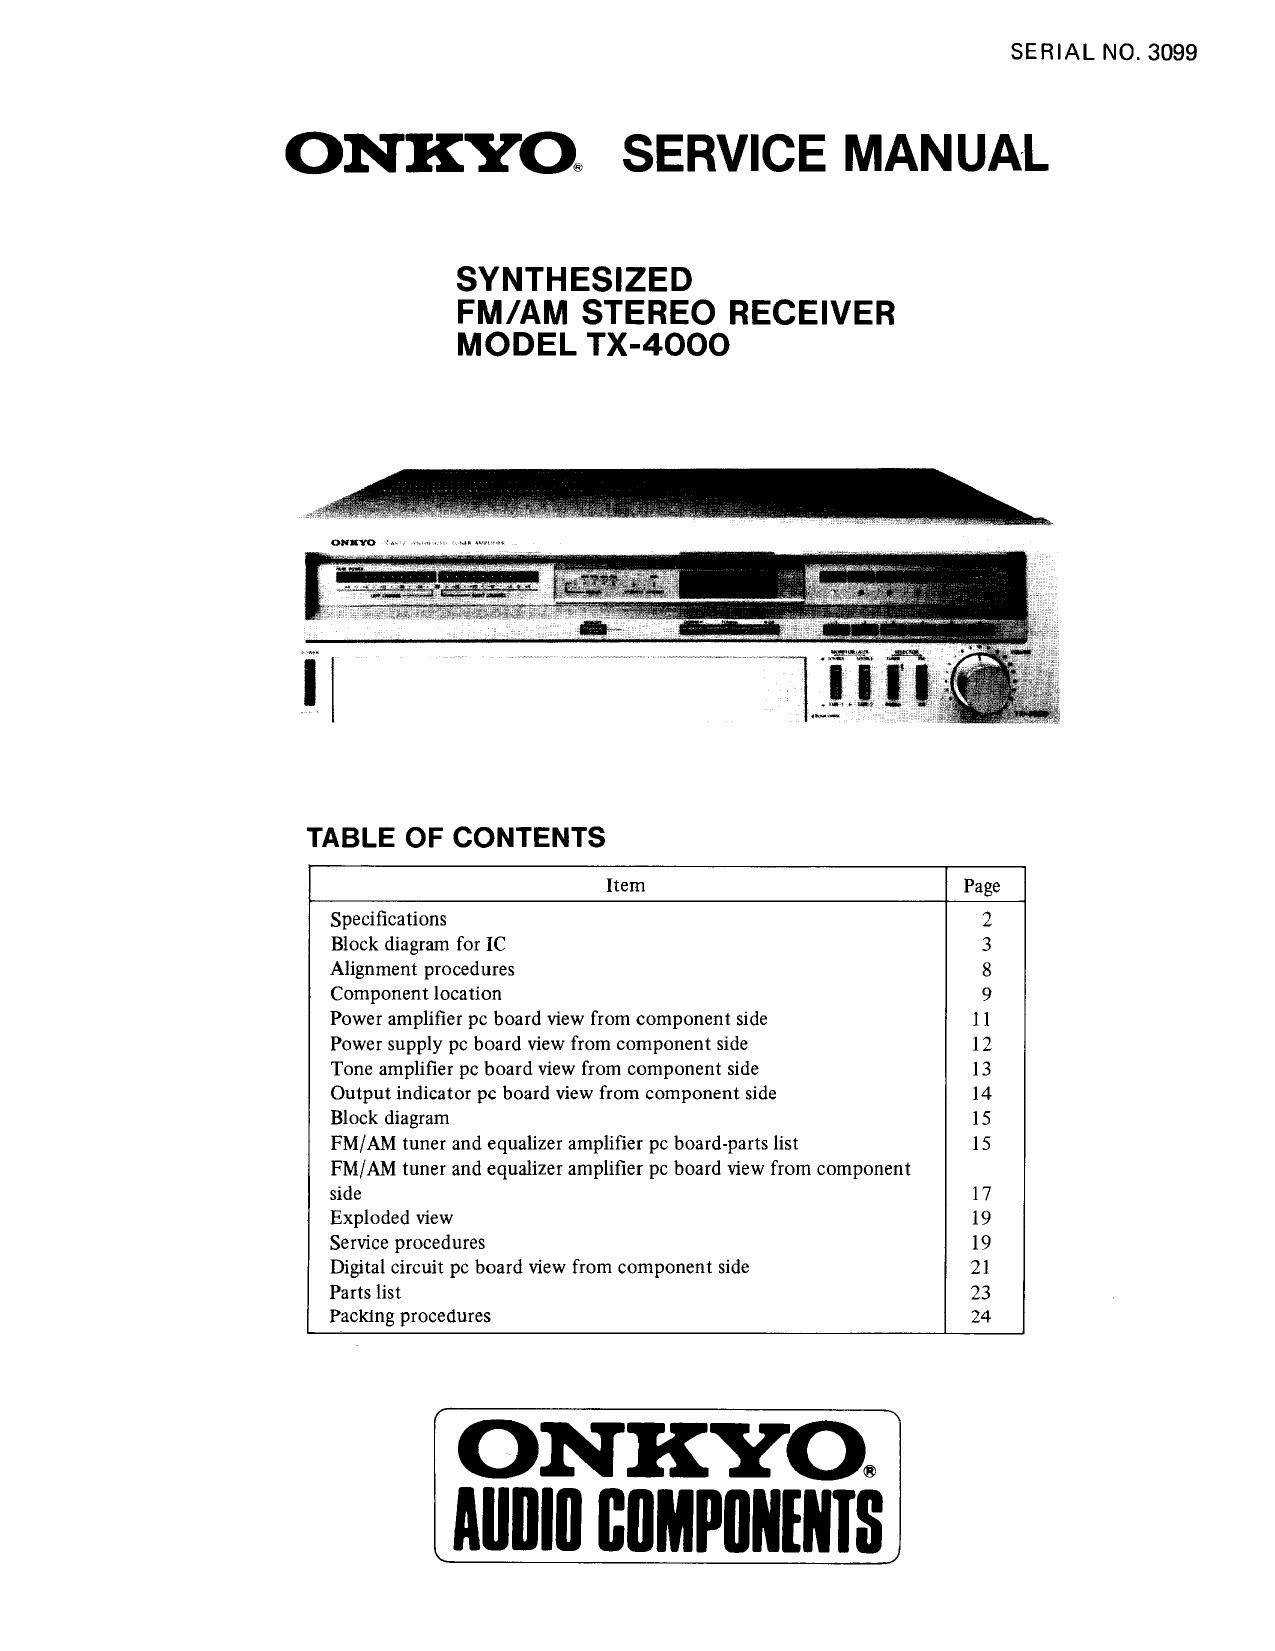 Onkyo TX 4000 Service Manual